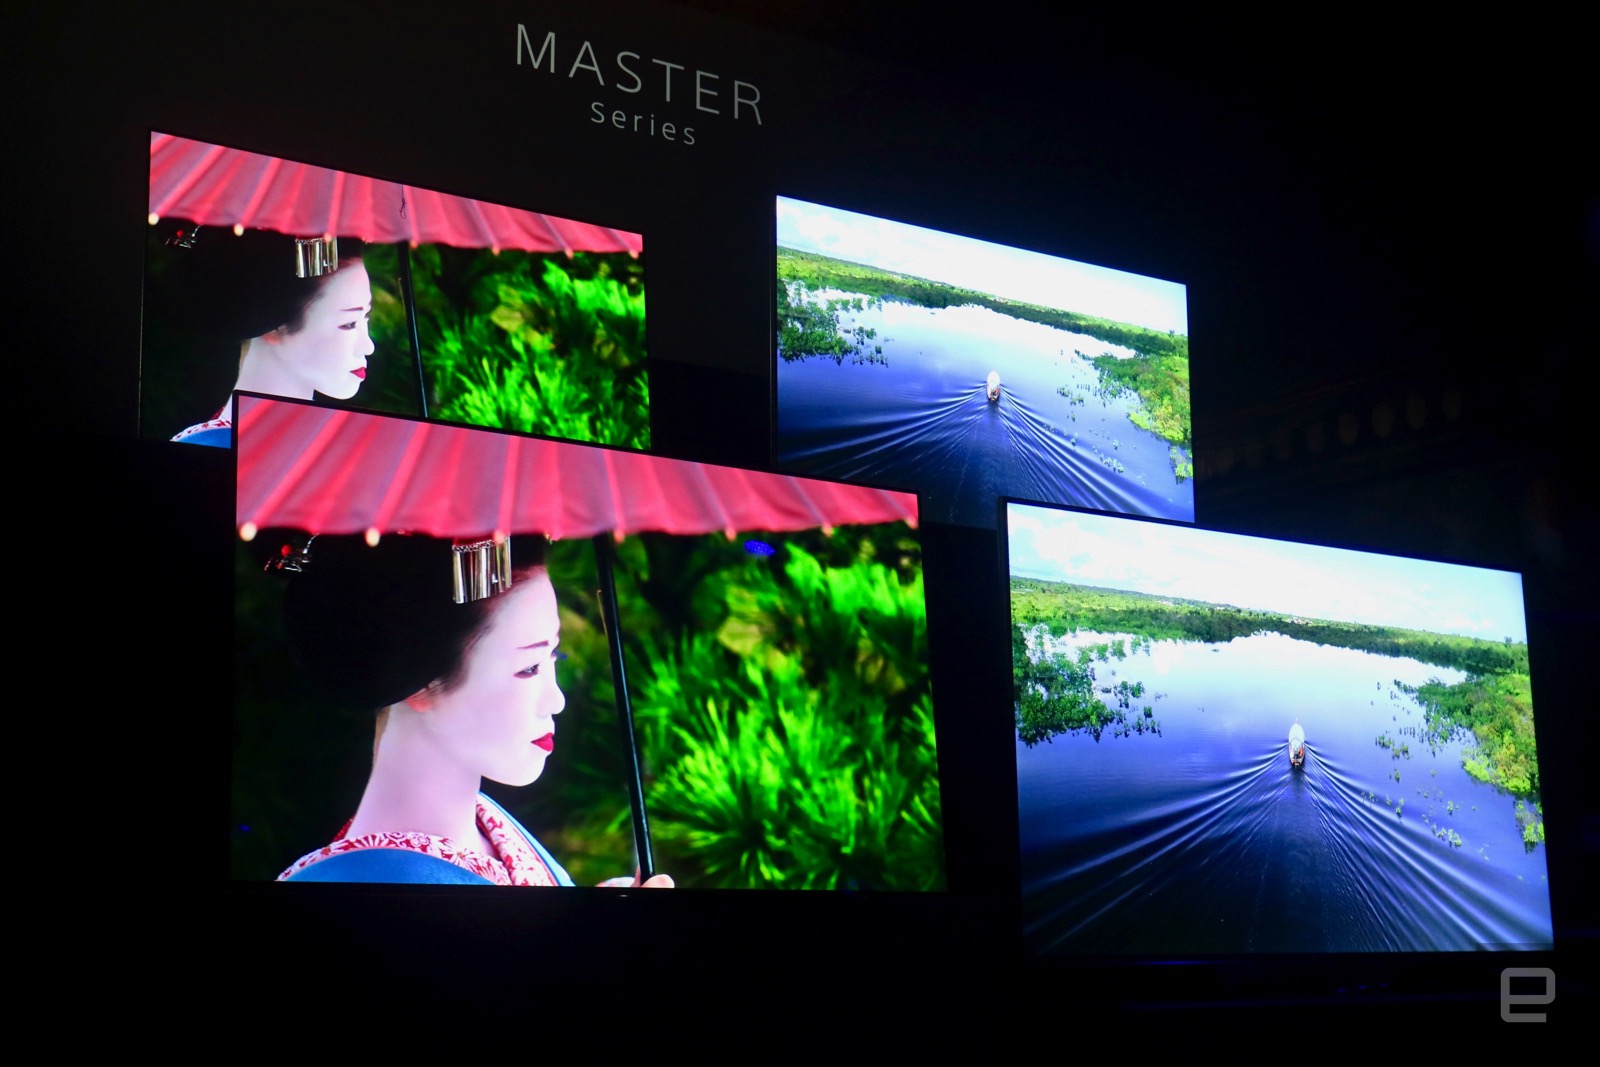 Sony giới thiệu Bravia Master Series, dòng TV mới nhất và cao cấp nhất của mình